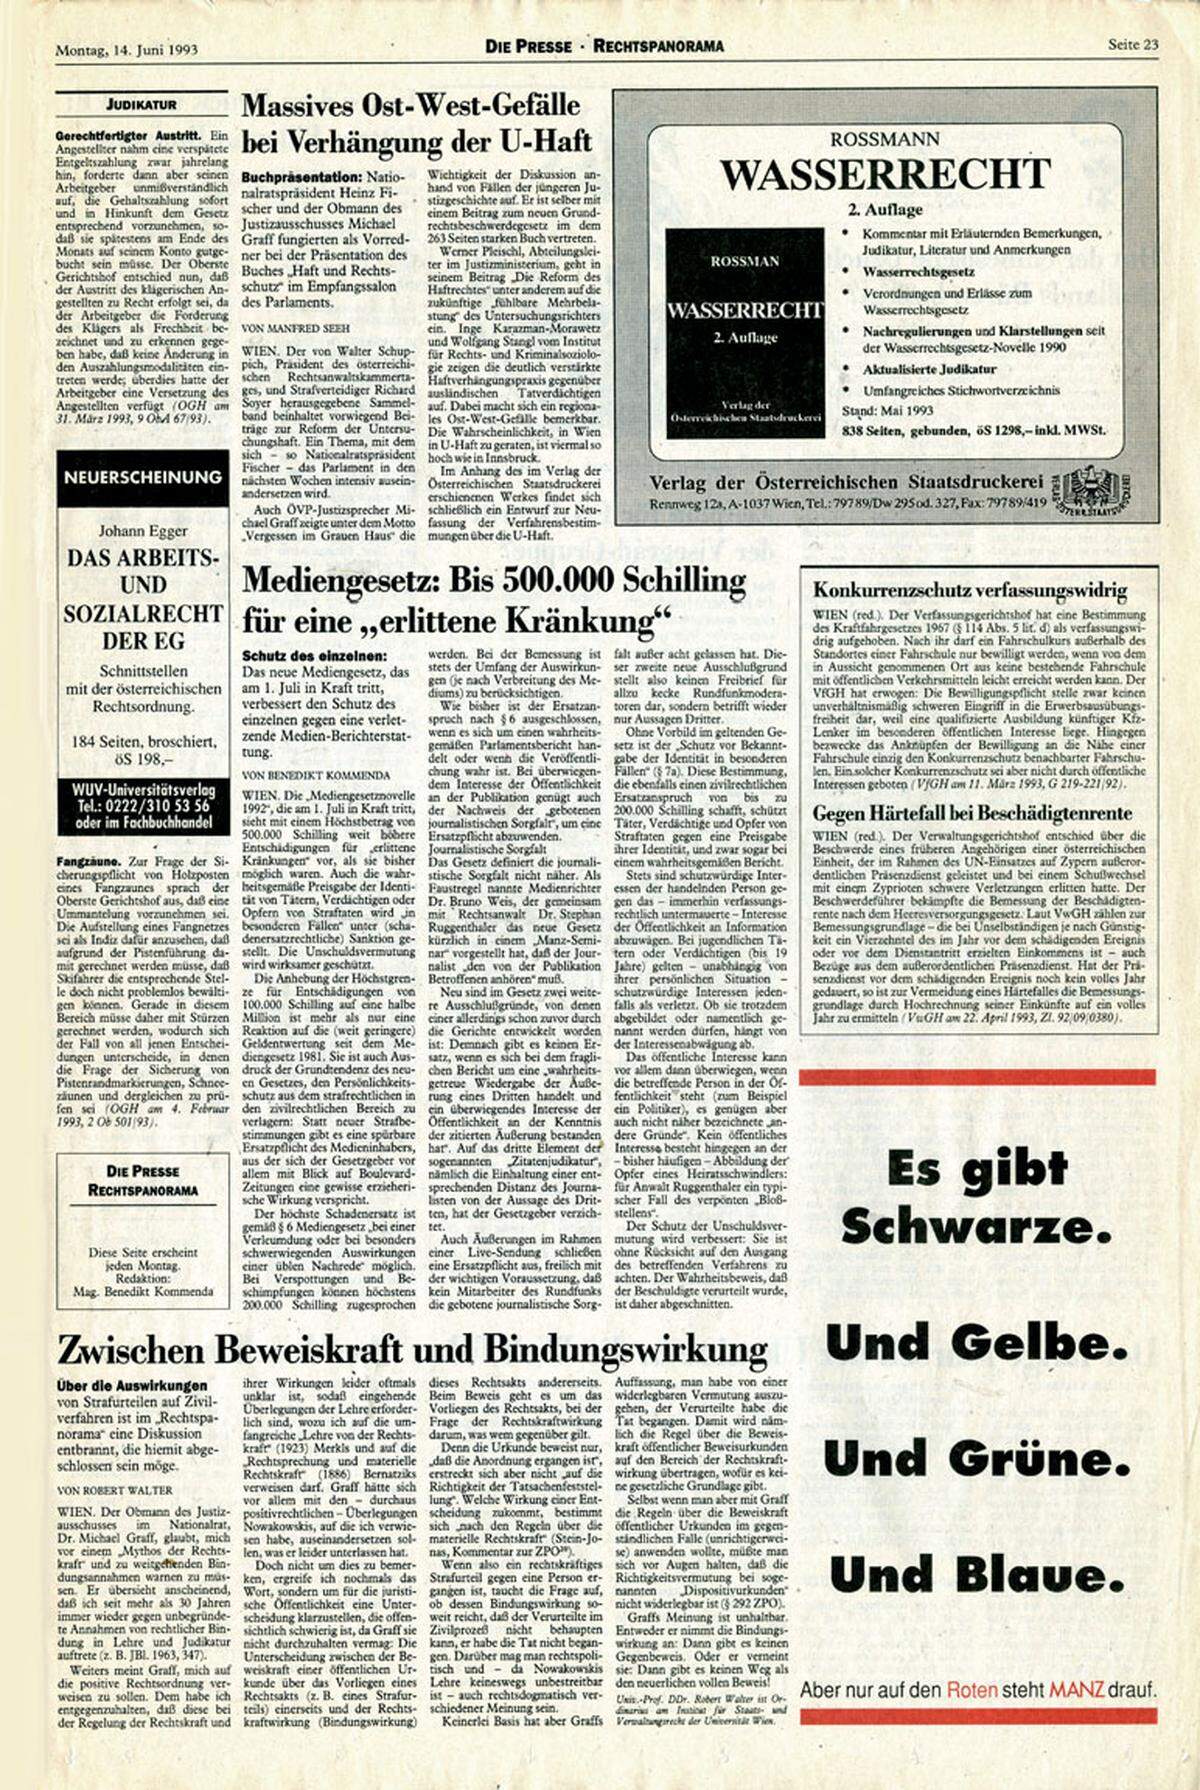 14. Juni 1993: "Die Presse" erscheint in einem etwas kleineren Format in einem neuen Layout. Erstmals ist Farbdruck möglich, hier dezent genutzt vom inserierenden Manz-Verlag. Aufmacher der Seite: das neue Mediengesetz, das am 1. Juli 1993 in Kraft trat.